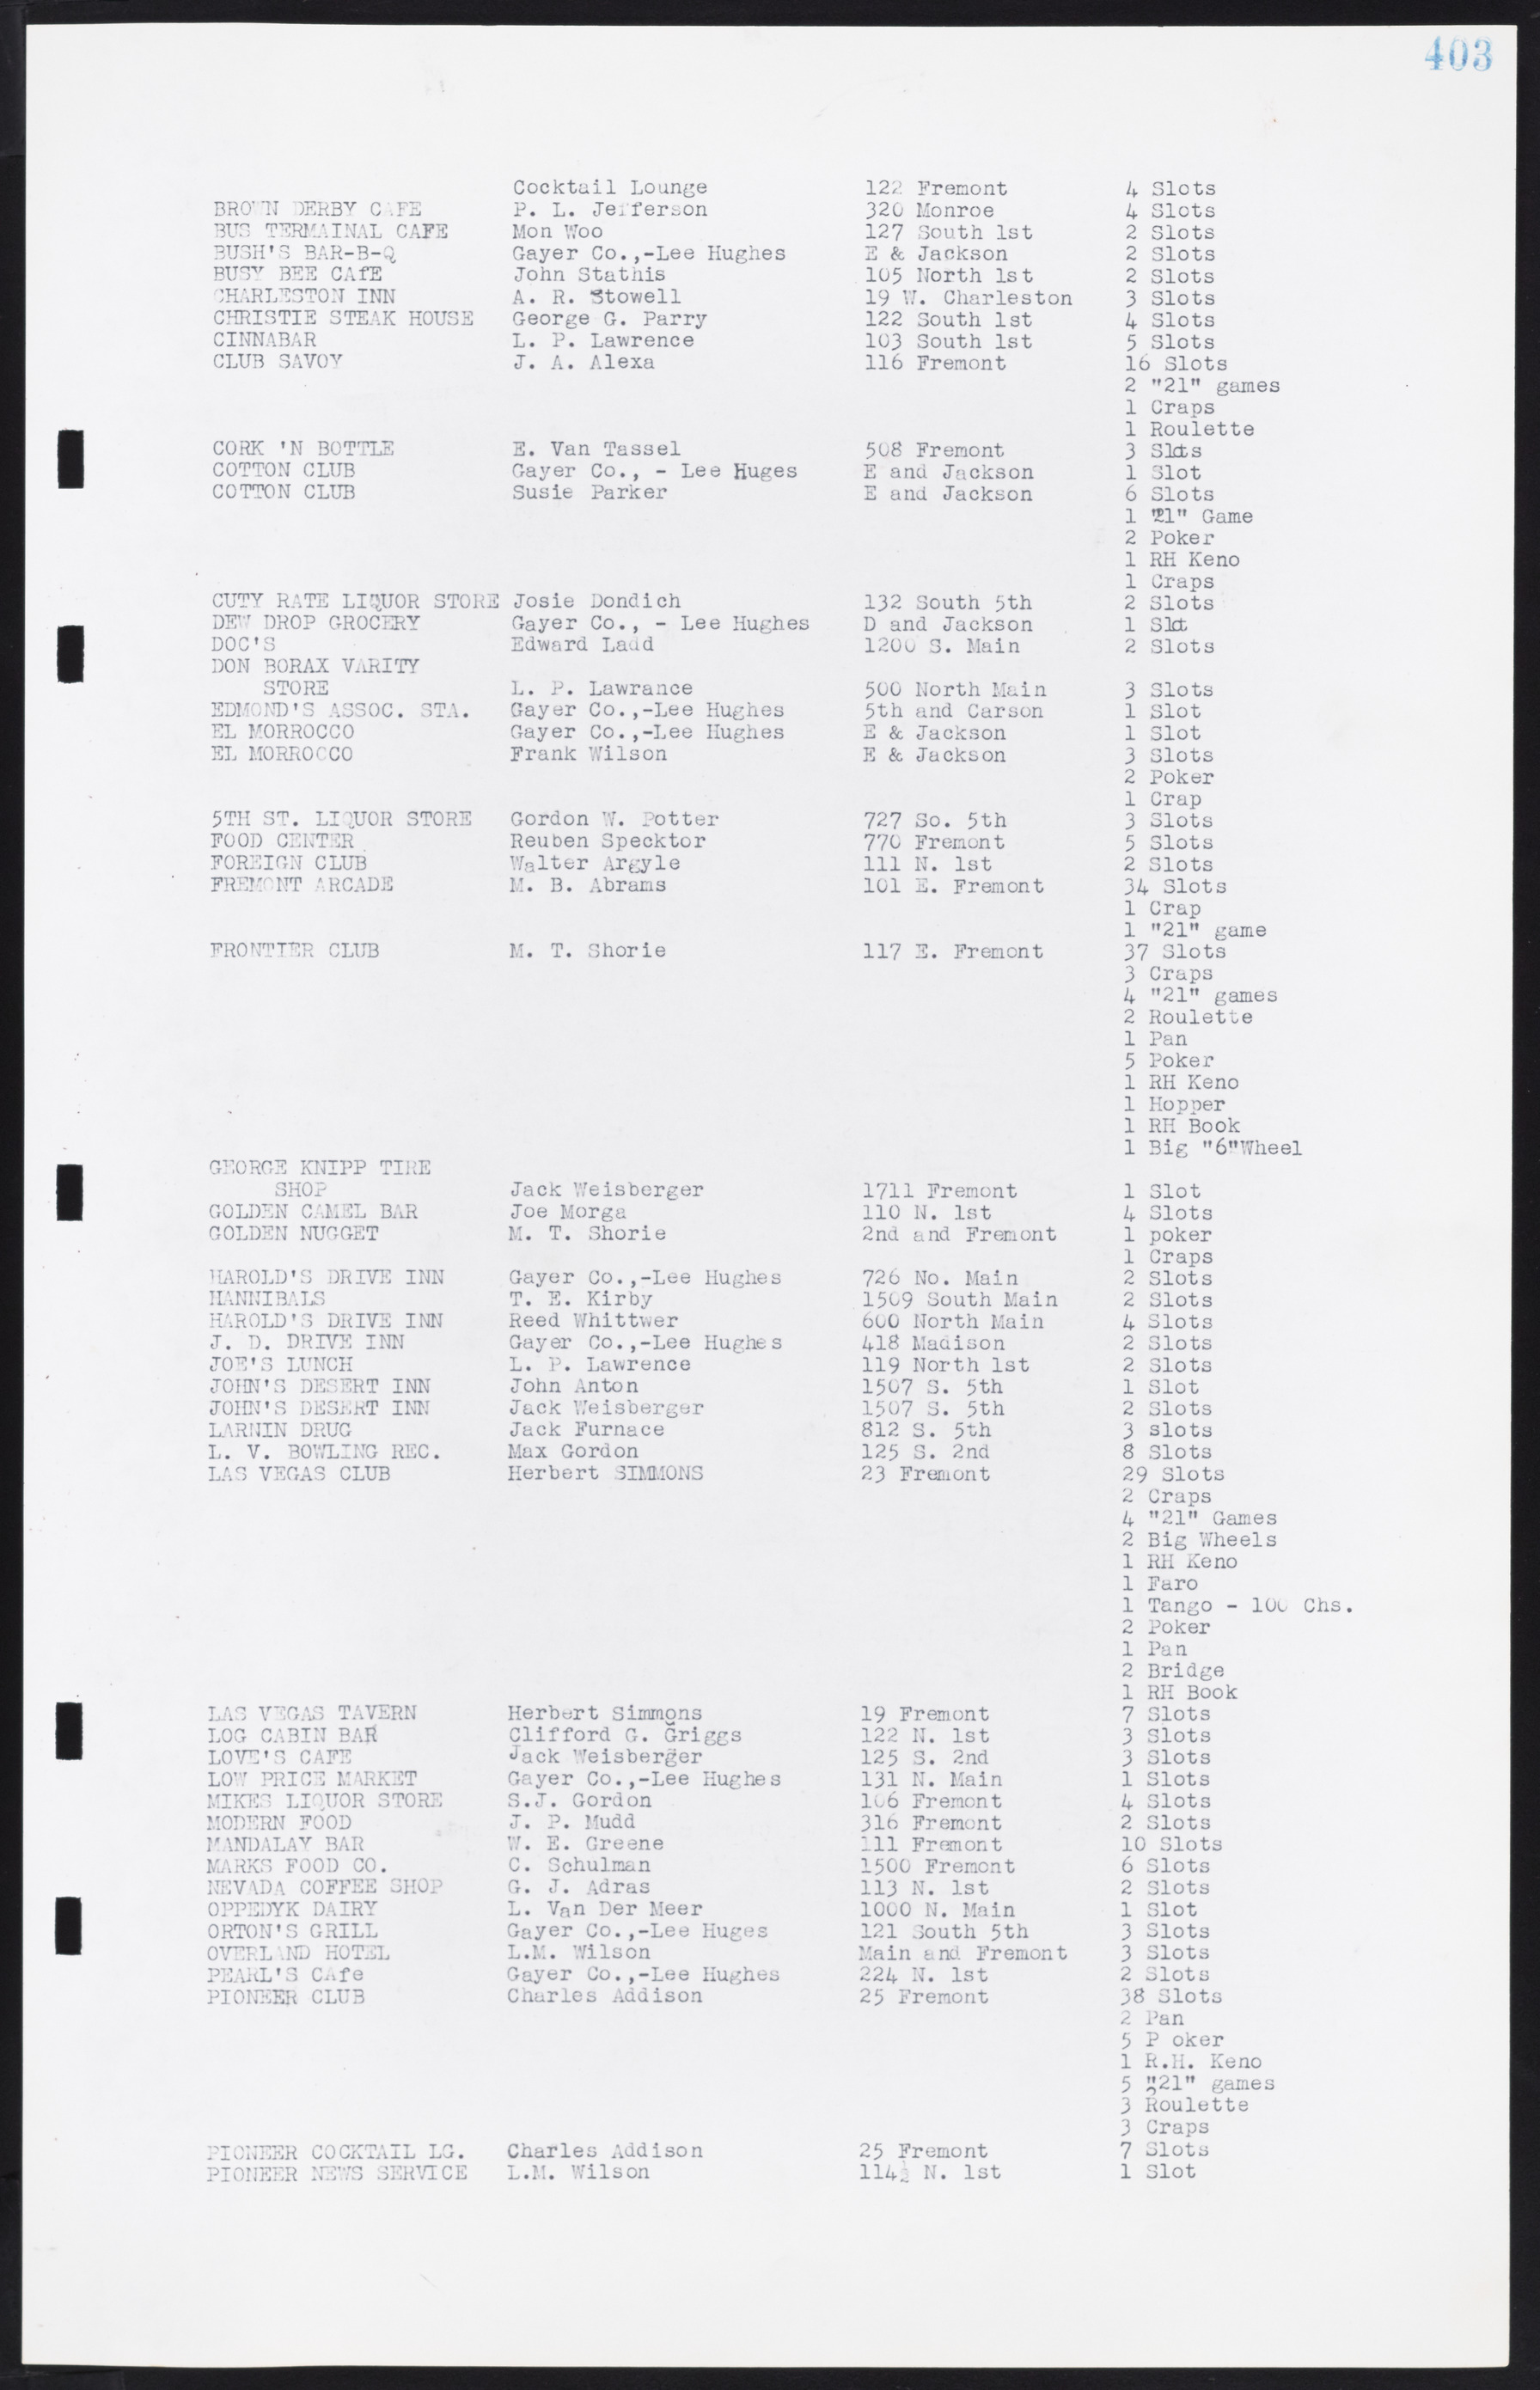 Las Vegas City Commission Minutes, August 11, 1942 to December 30, 1946, lvc000005-430